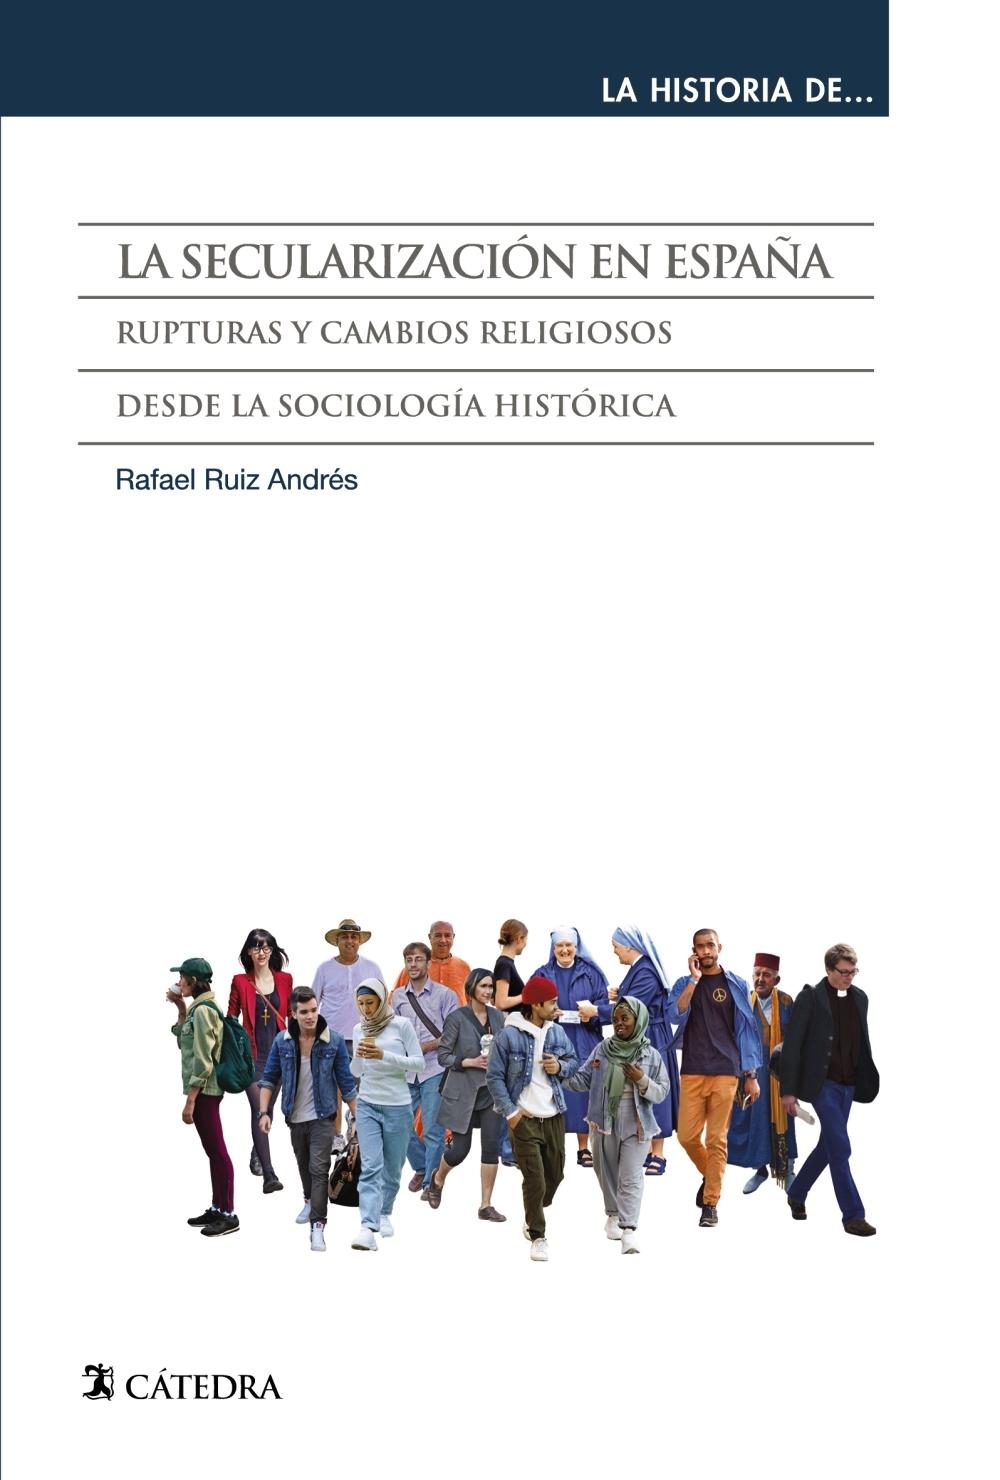 SECULARIZACION EN ESPAÑA, LA "RUPTURAS Y CAMBIOS RELIGIOSOS DESDE LA SOCIOLOGIA HISTORICA"